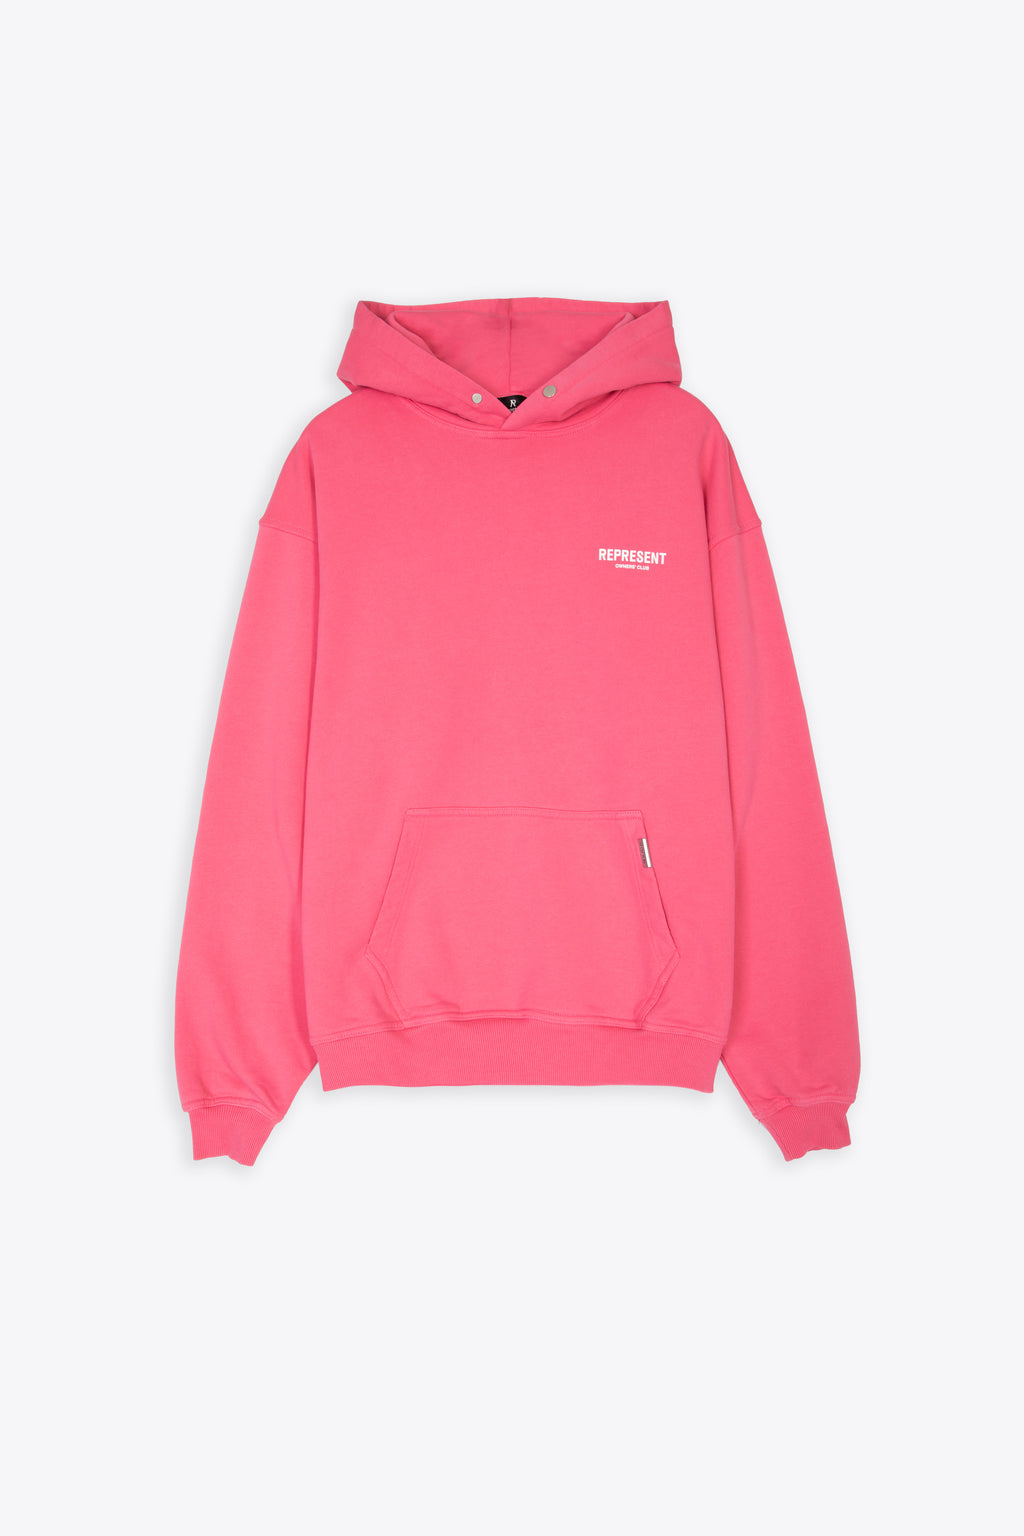 alt-image__Bubblegum-pink-hoodie-with-logo---Owners-Club-Hoodie